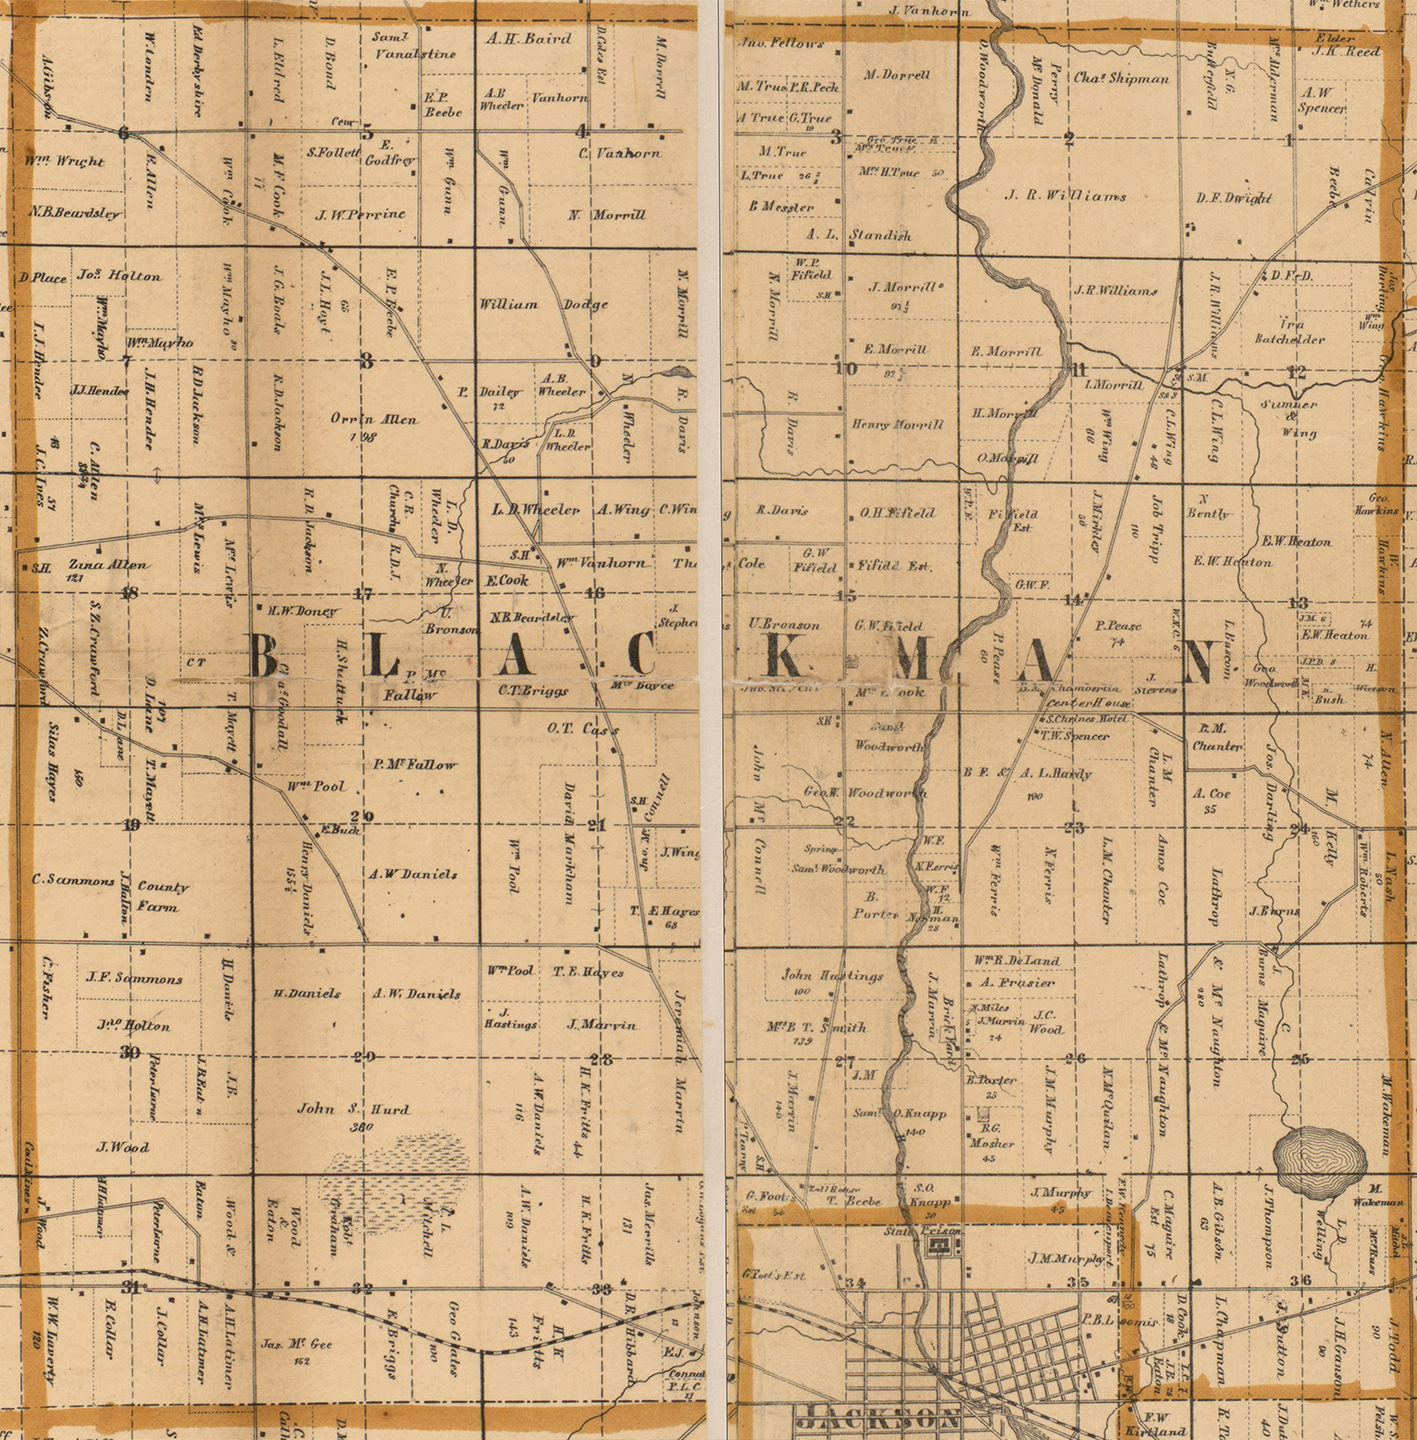 1858 Blackman Township, Michigan landownership map